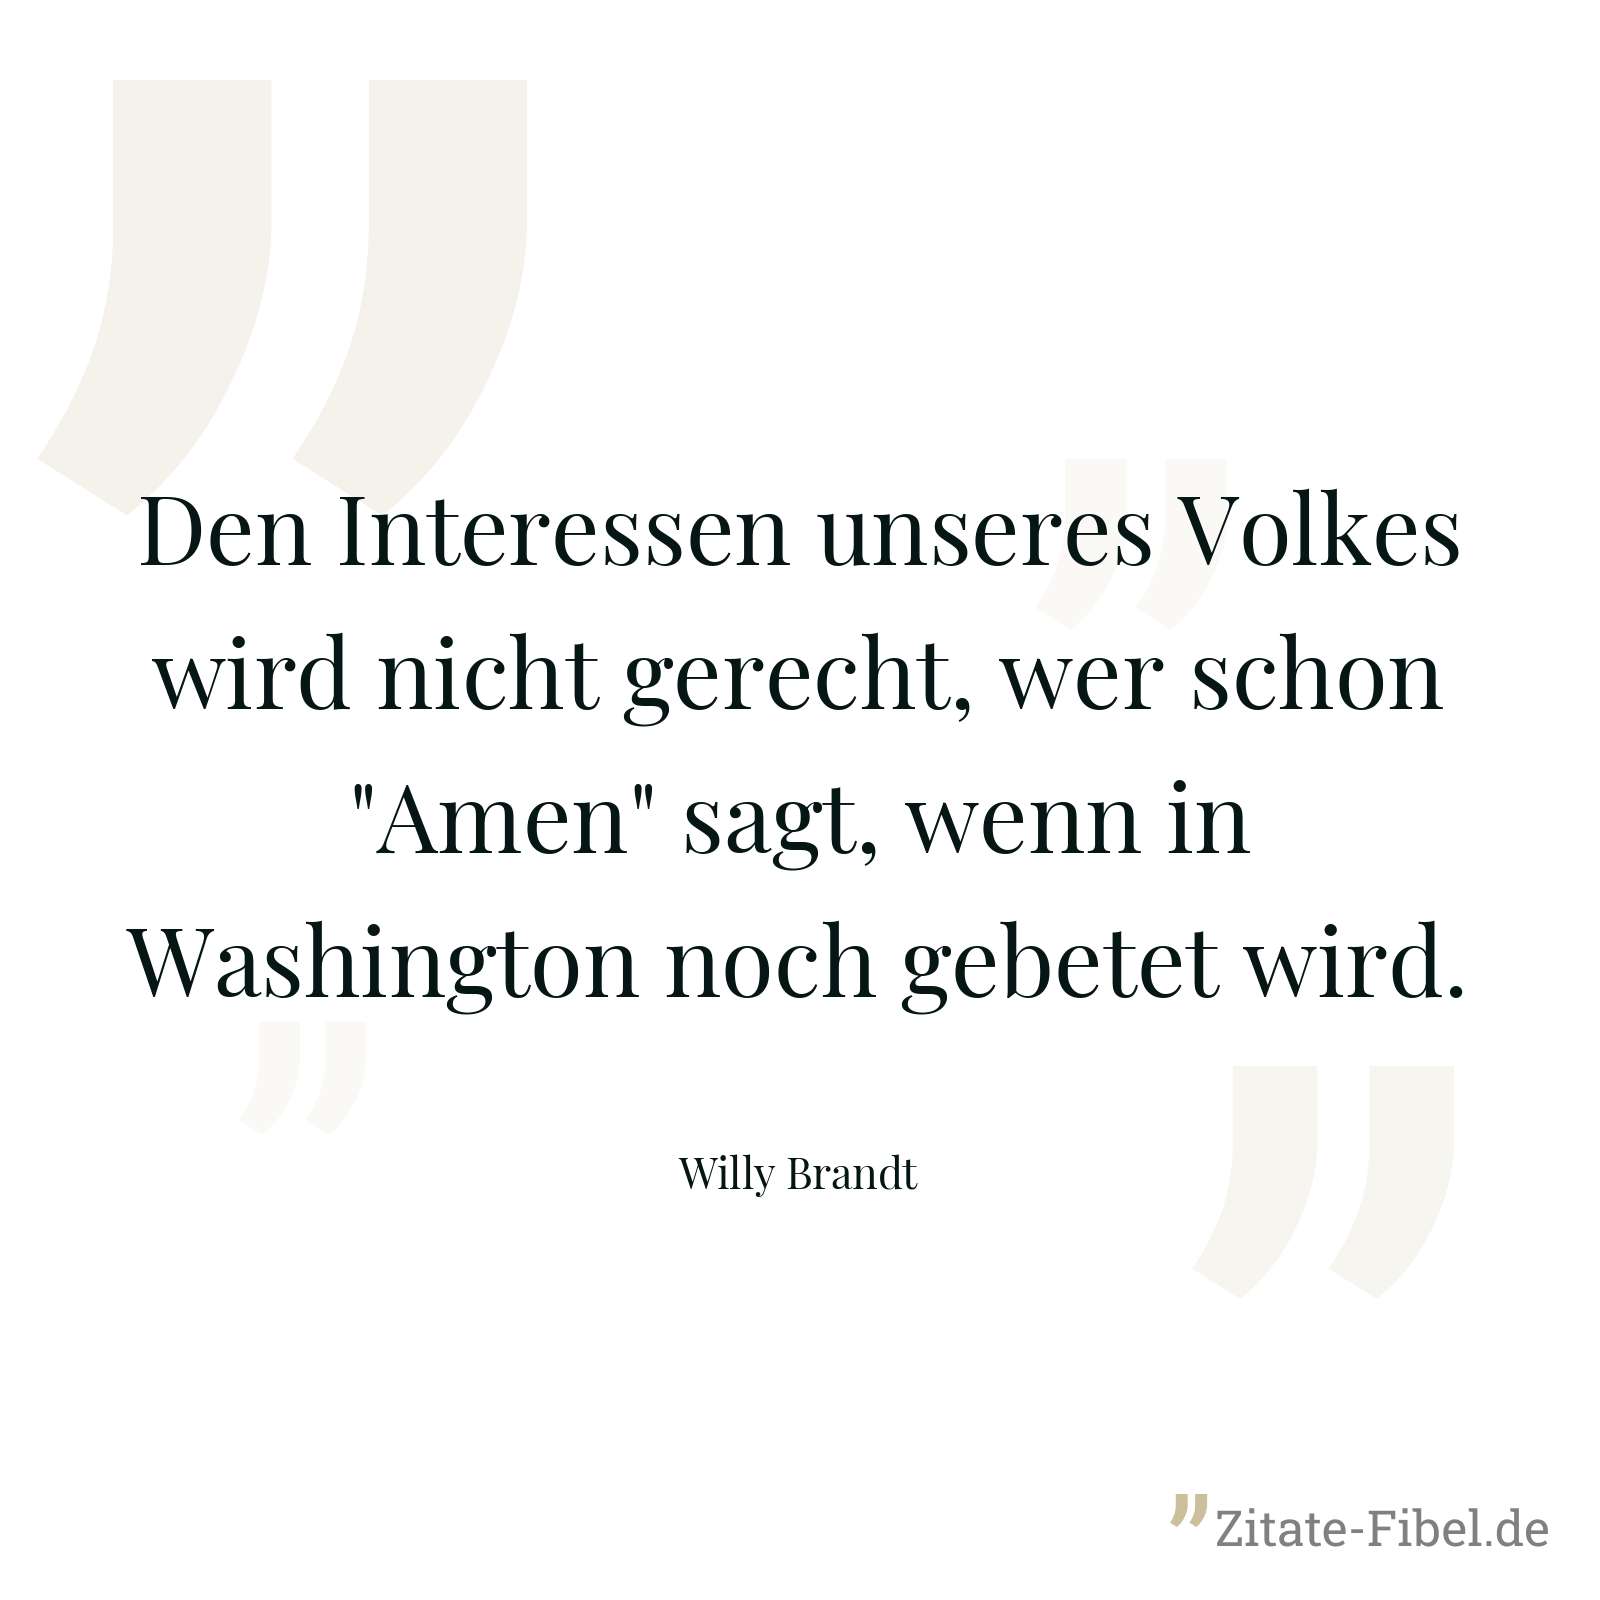 Den Interessen unseres Volkes wird nicht gerecht, wer schon "Amen" sagt, wenn in Washington noch gebetet wird. - Willy Brandt